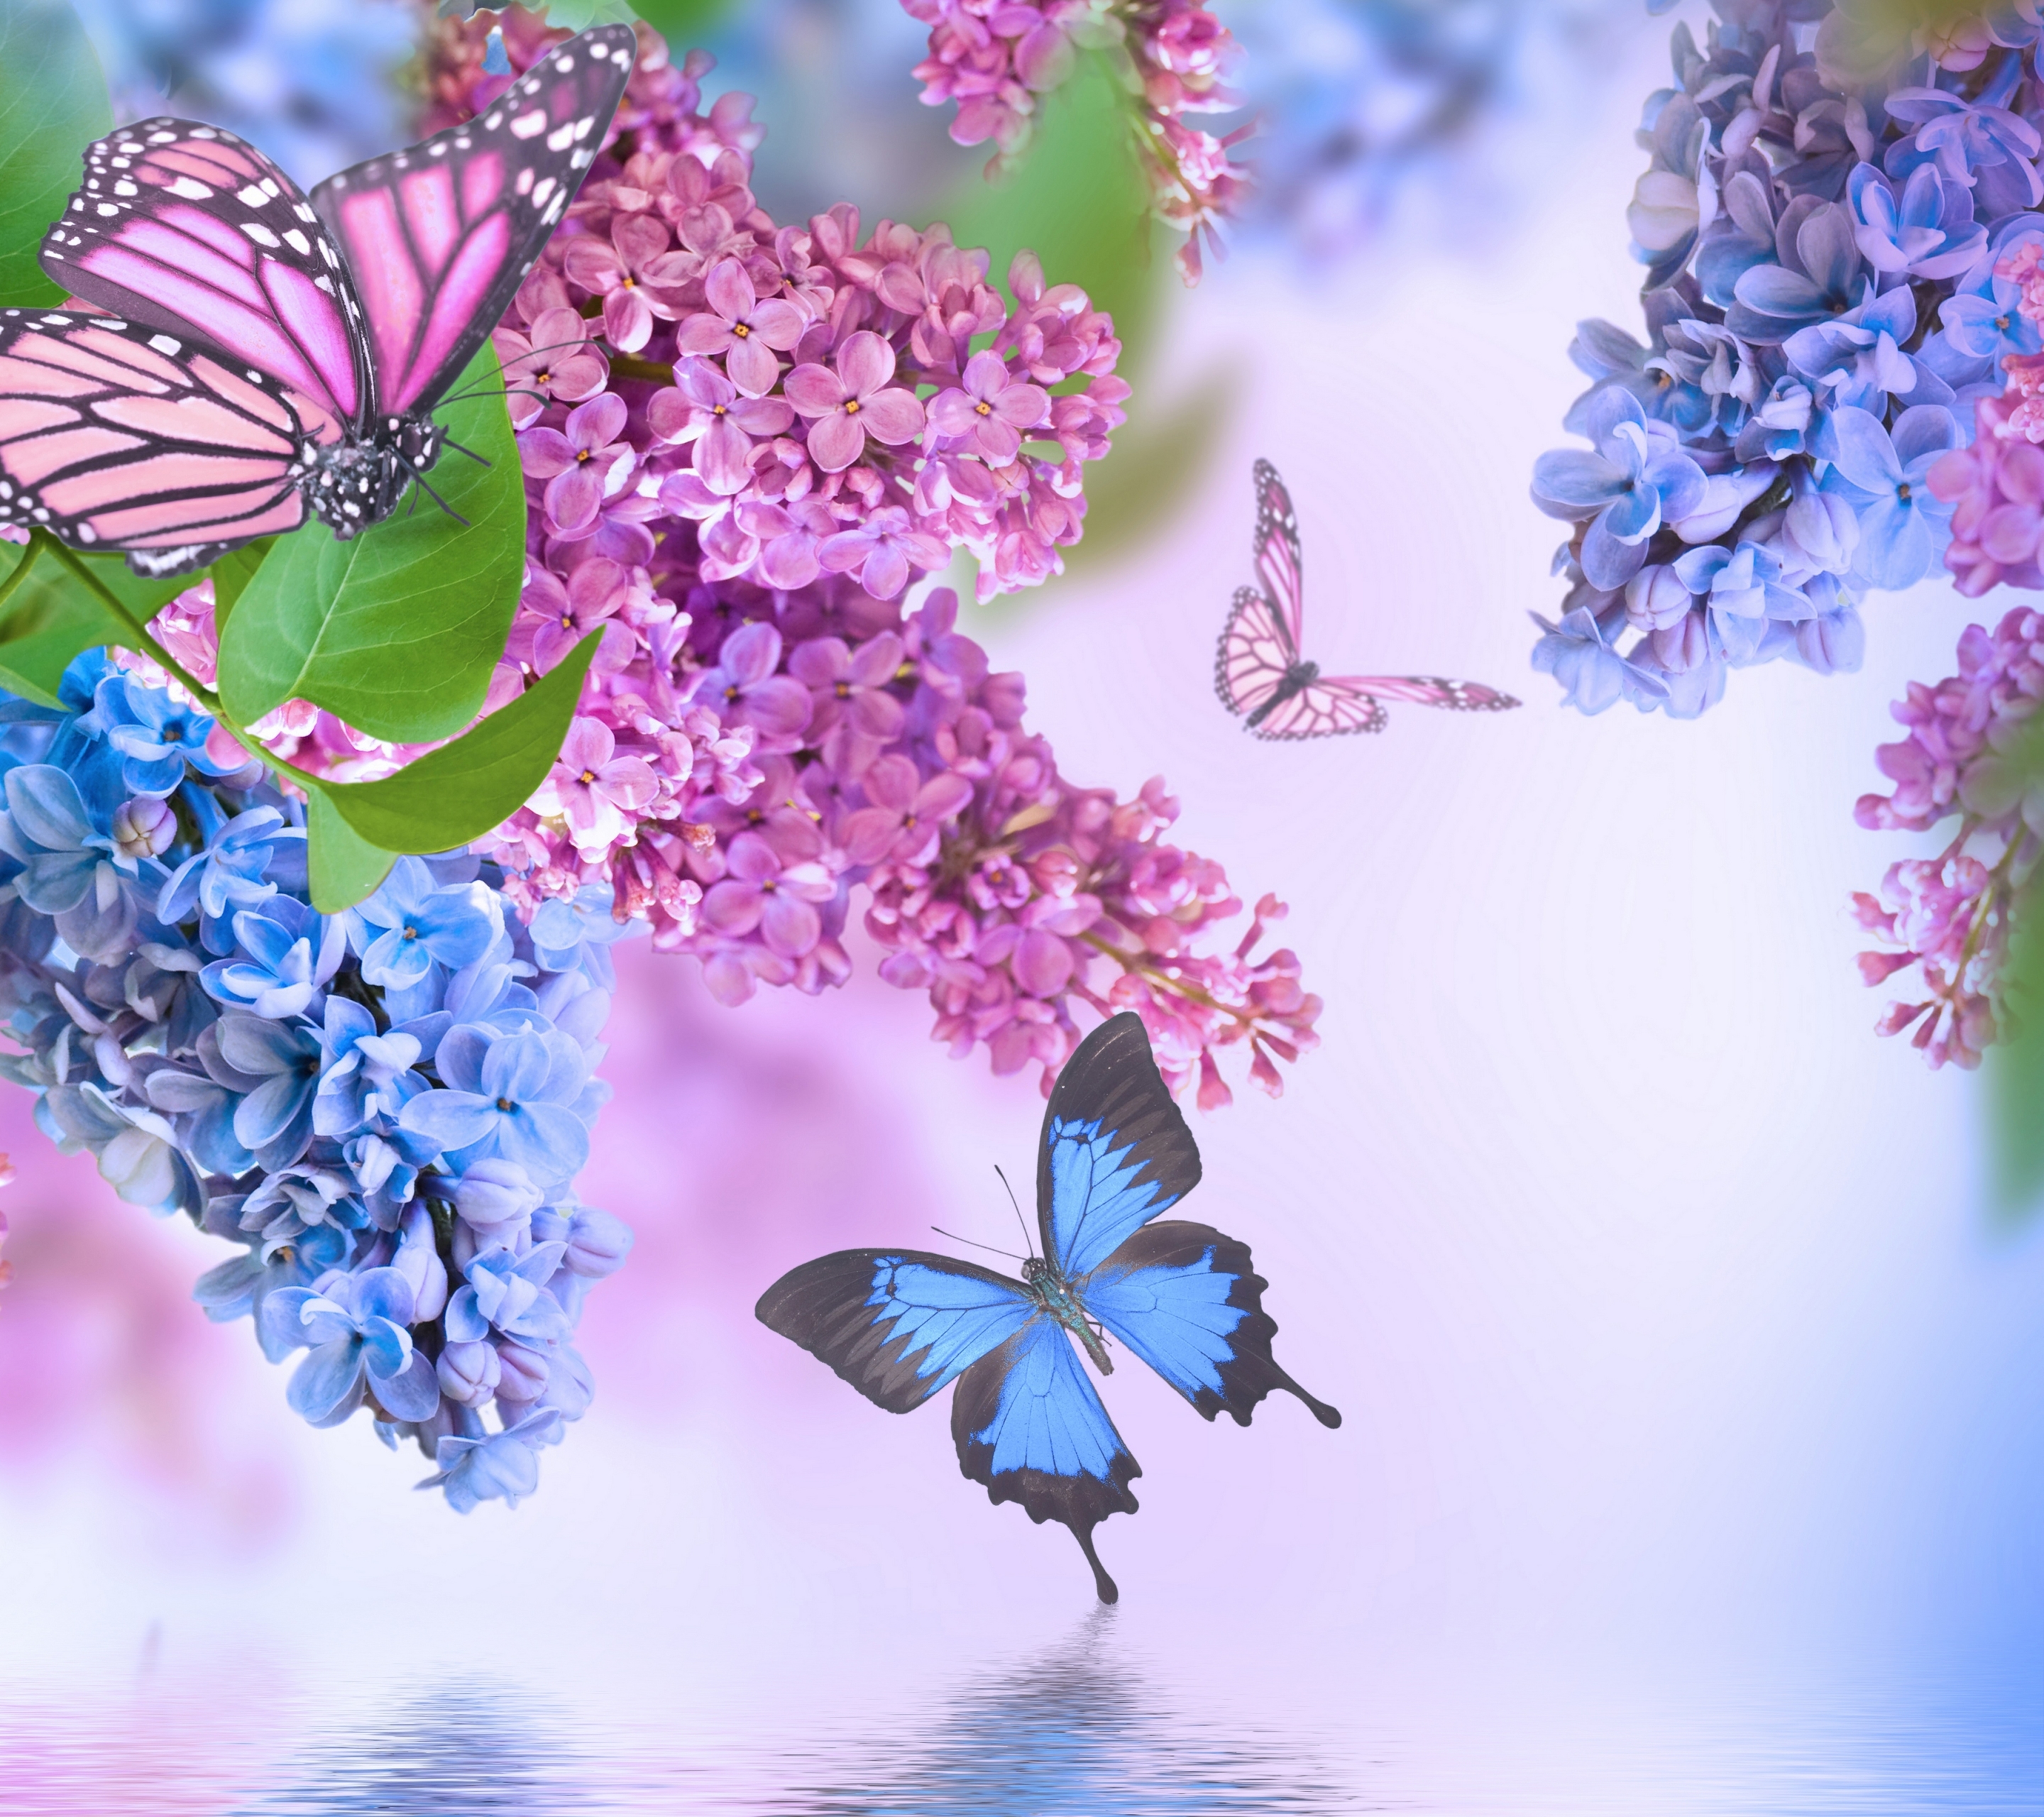 Скачать картинку Сирень, Цветок, Бабочка, Весна, Земля/природа, Розовый Цветок, Синий Цветок, Флауэрсы в телефон бесплатно.